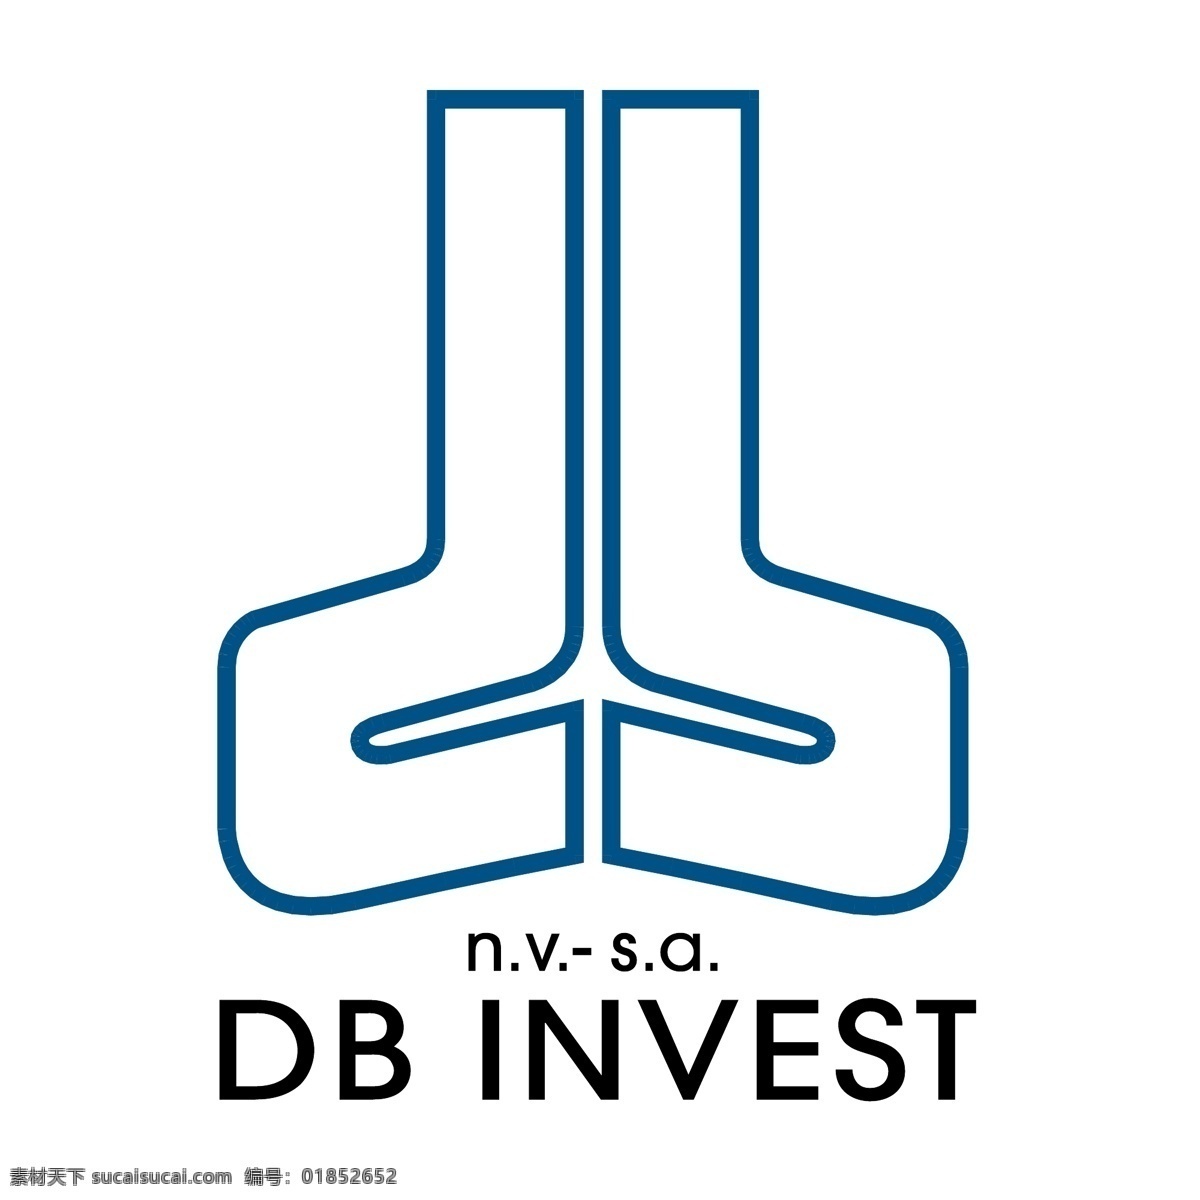 db 投资 标识 公司 免费 品牌 品牌标识 商标 矢量标志下载 免费矢量标识 矢量 psd源文件 logo设计